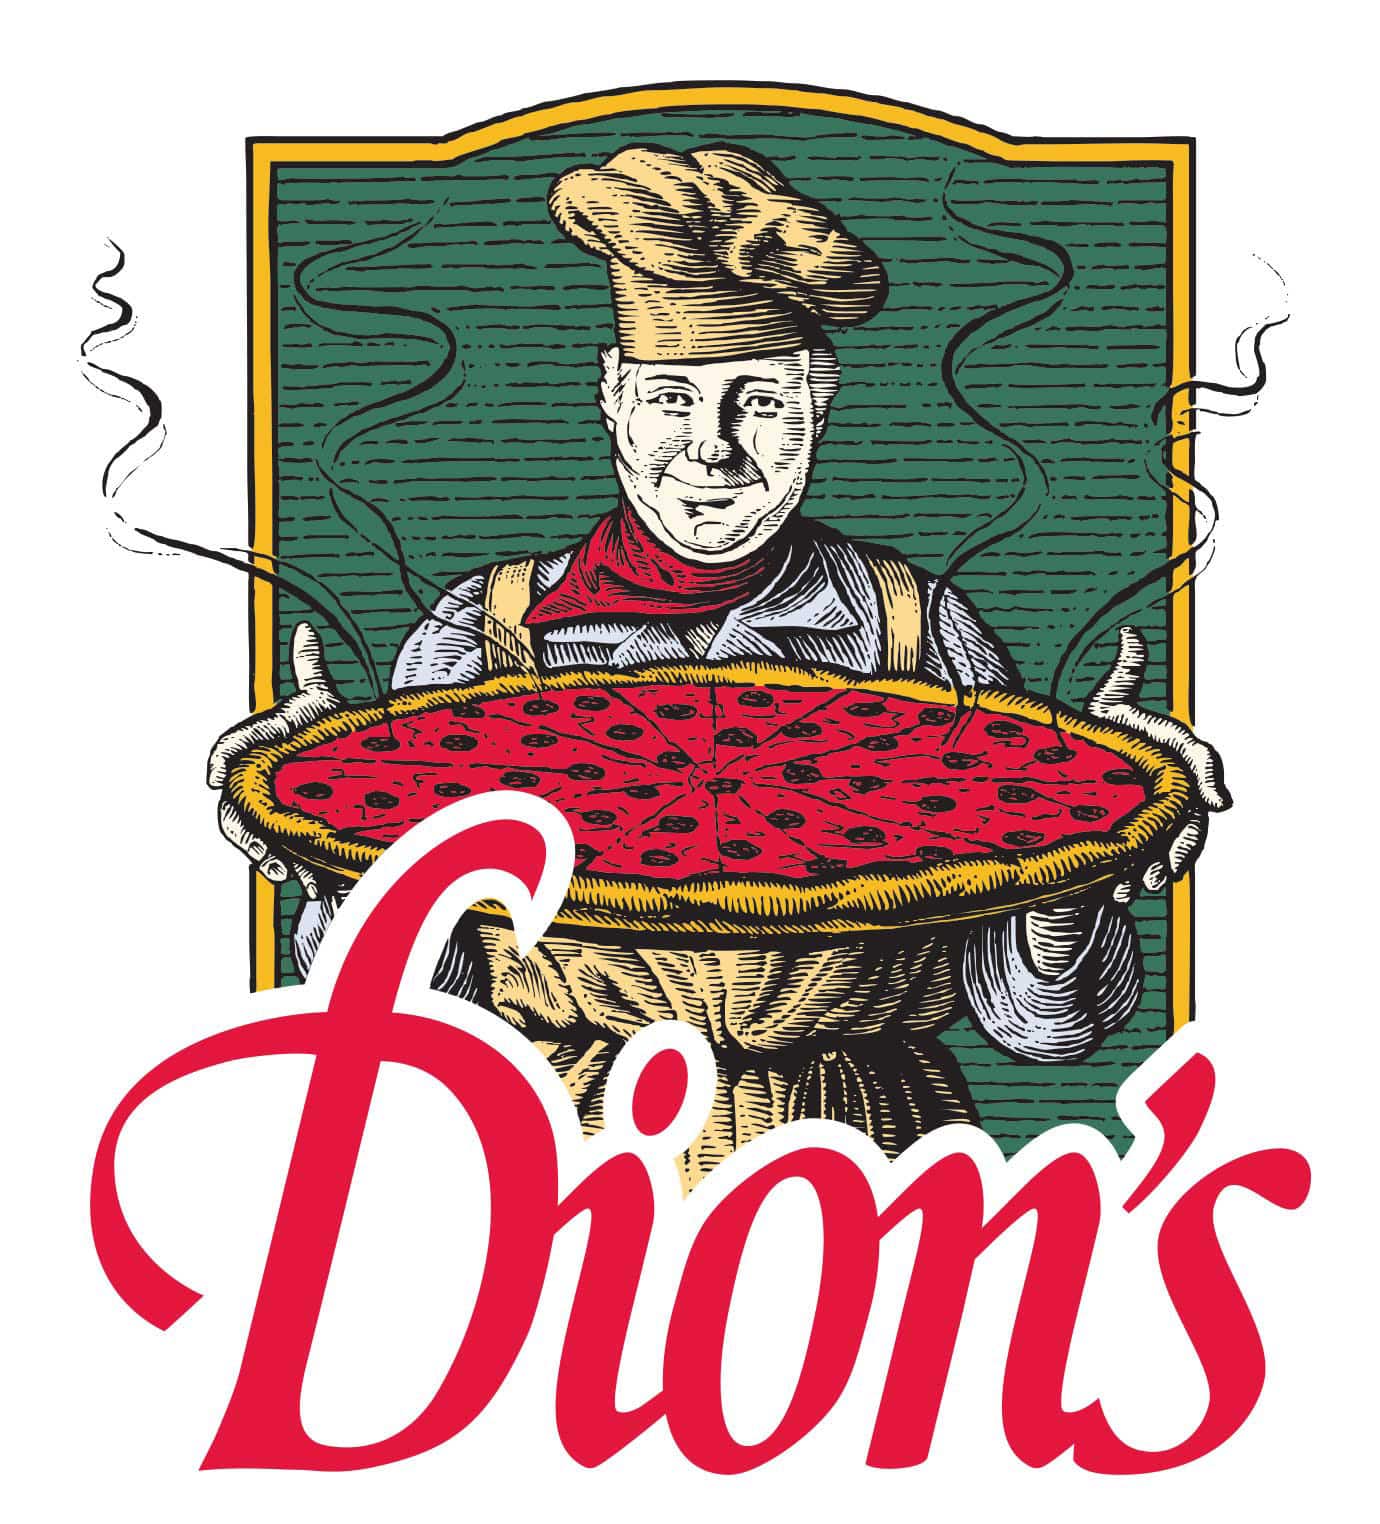 DionsPizzaMan